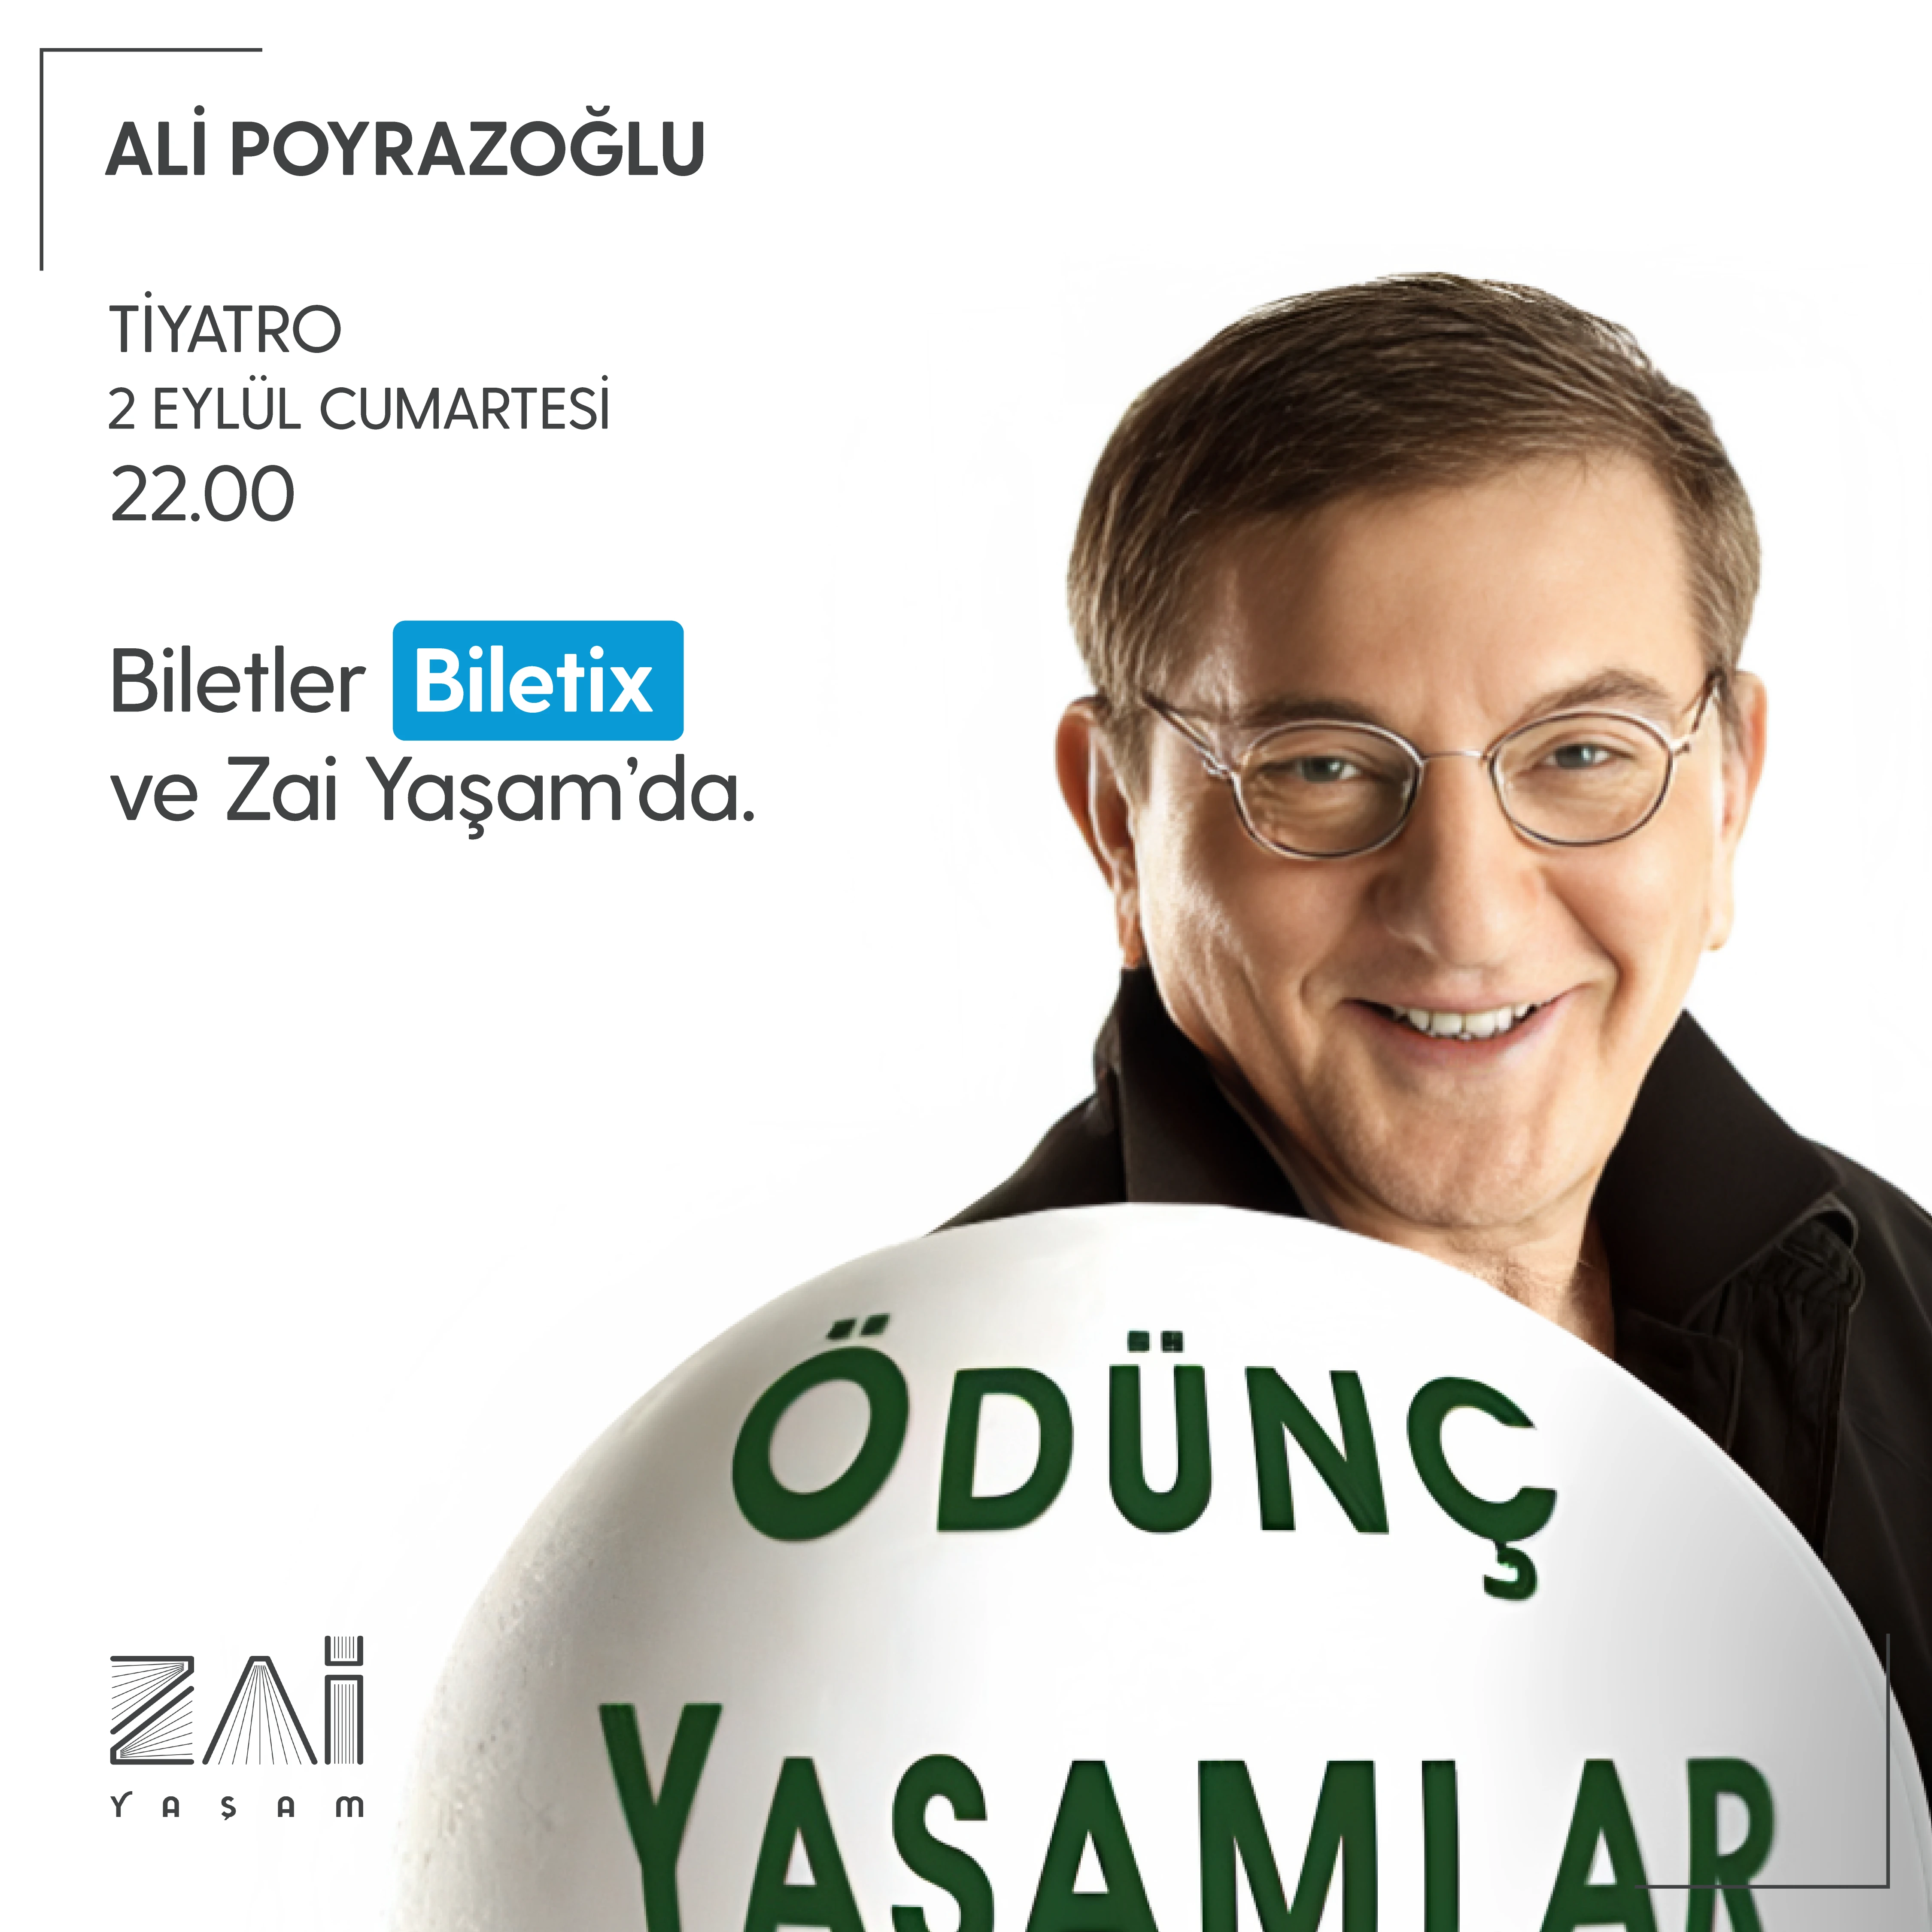 Ali Poyrazoğlu Ödünç Yaşamlar Tiyatrosu - Zai Yaşam Bodrum